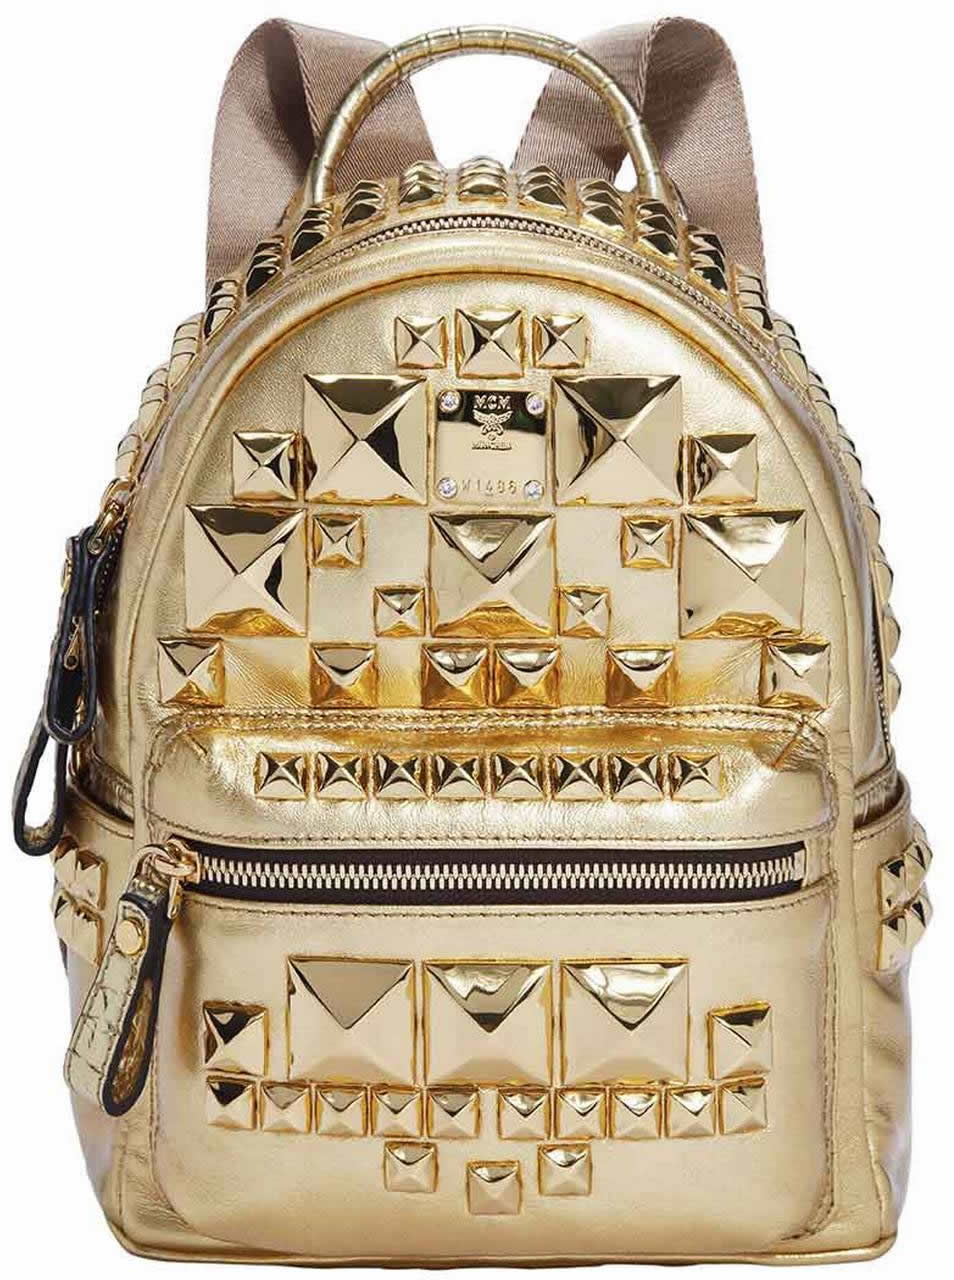 Универмаг Selfridges представил "золотую" коллекцию сумок (фото 2)